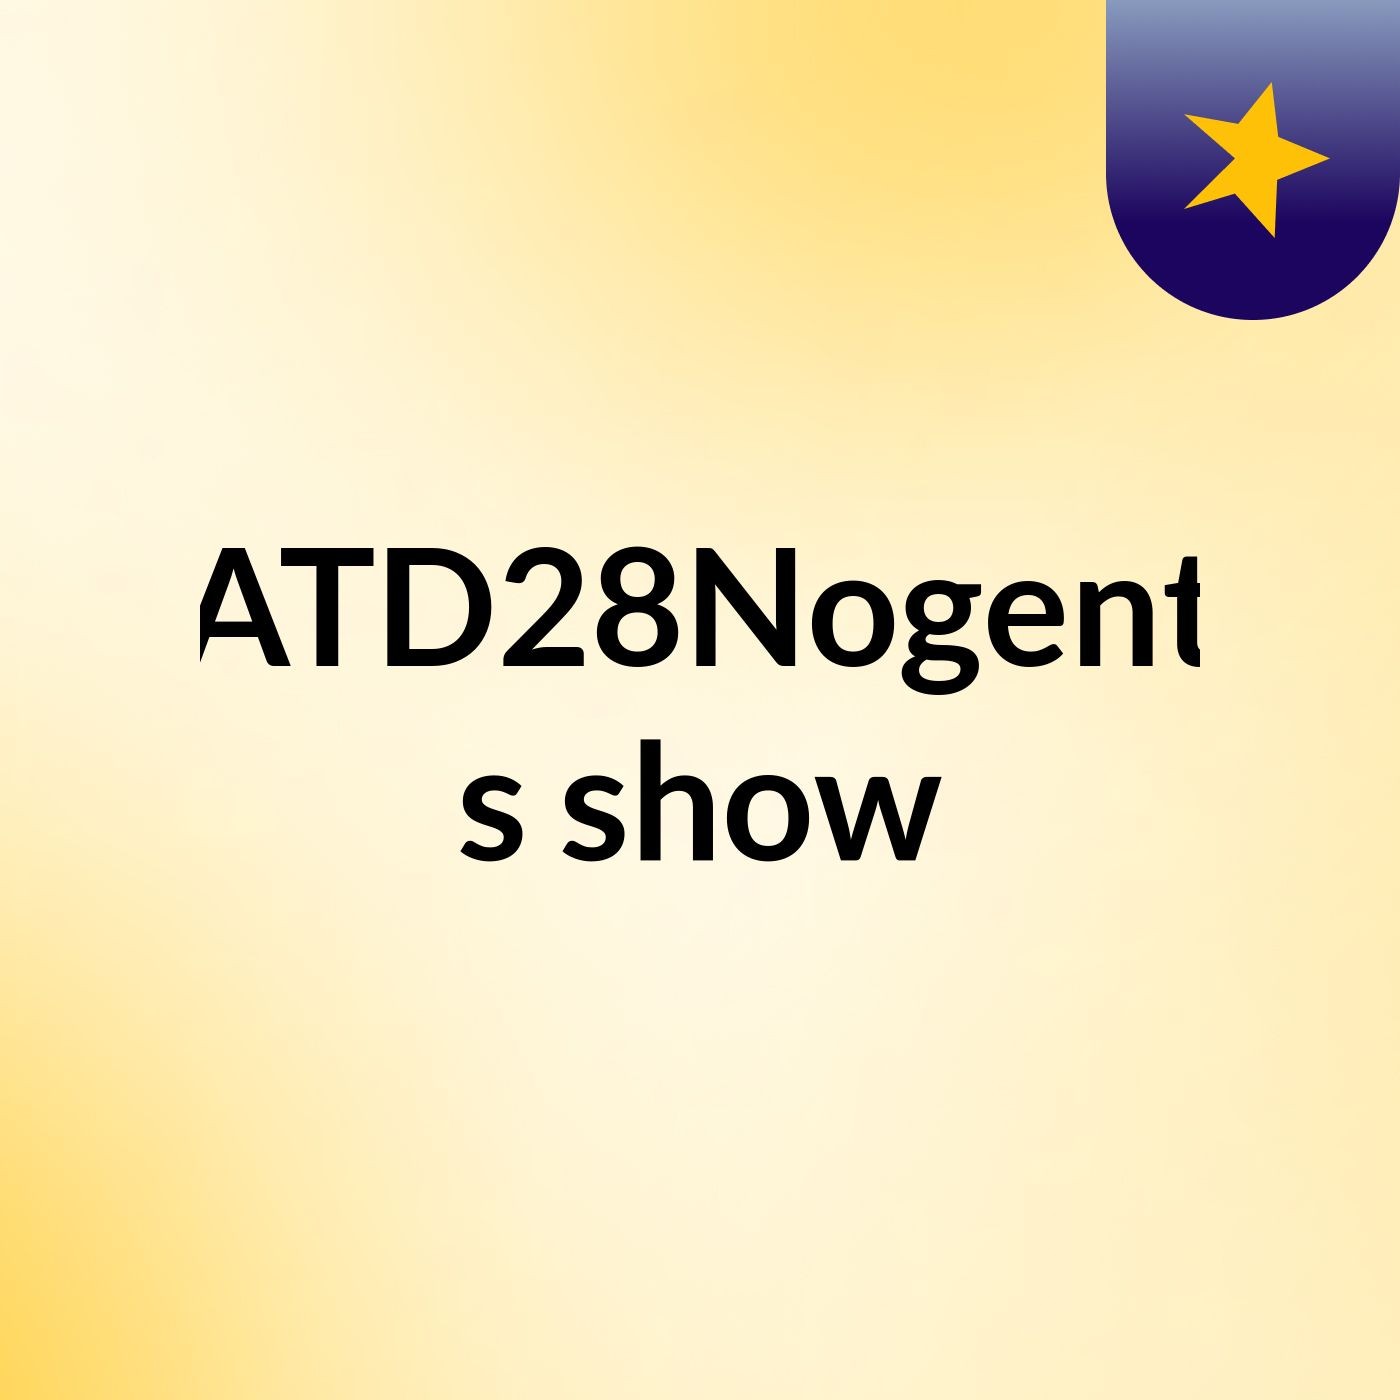 ATD28Nogent's show